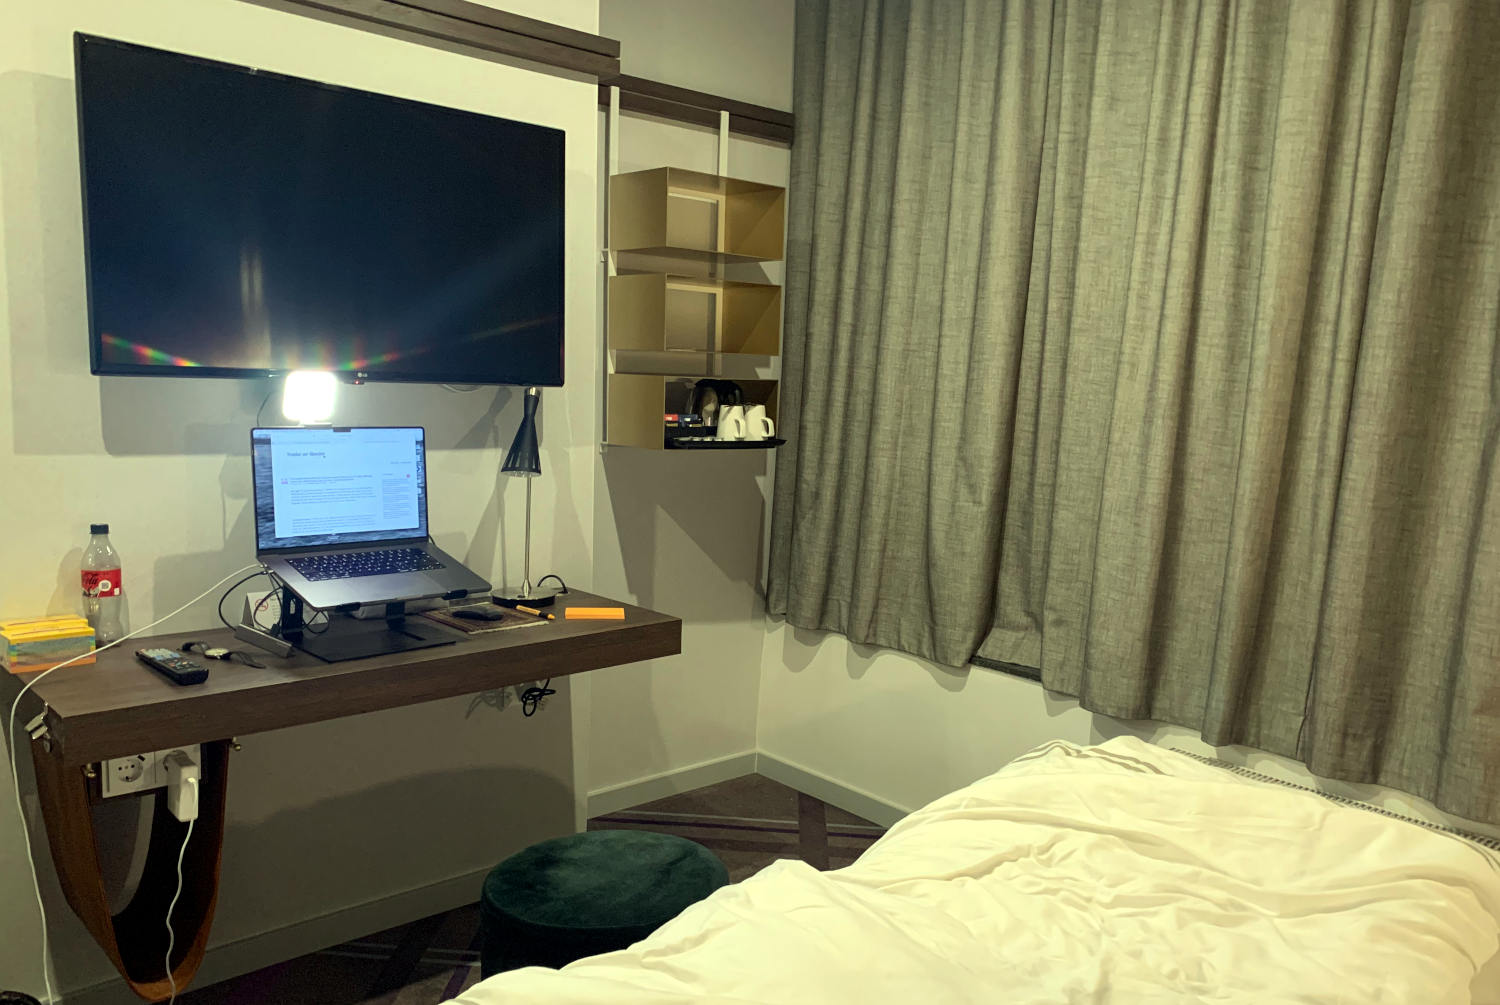 Schreibtisch im Hotel unter einem Fernseher, darauf ein Laptop auf einem Ständer und ein Licht für Videokonferenzen. 